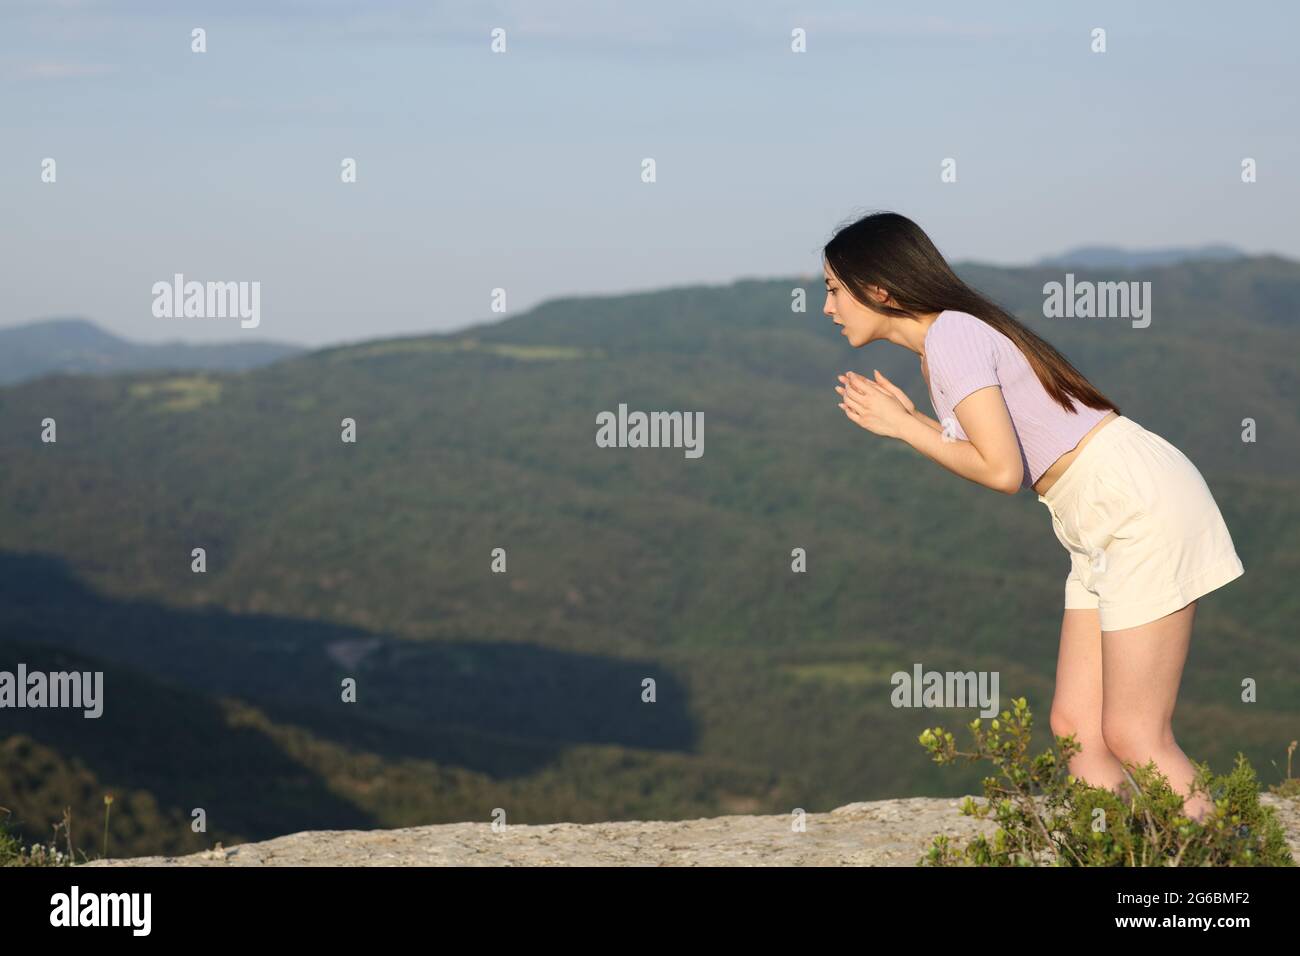 Scared asian woman suffering vertigo looking down on a mountain cliff Stock Photo